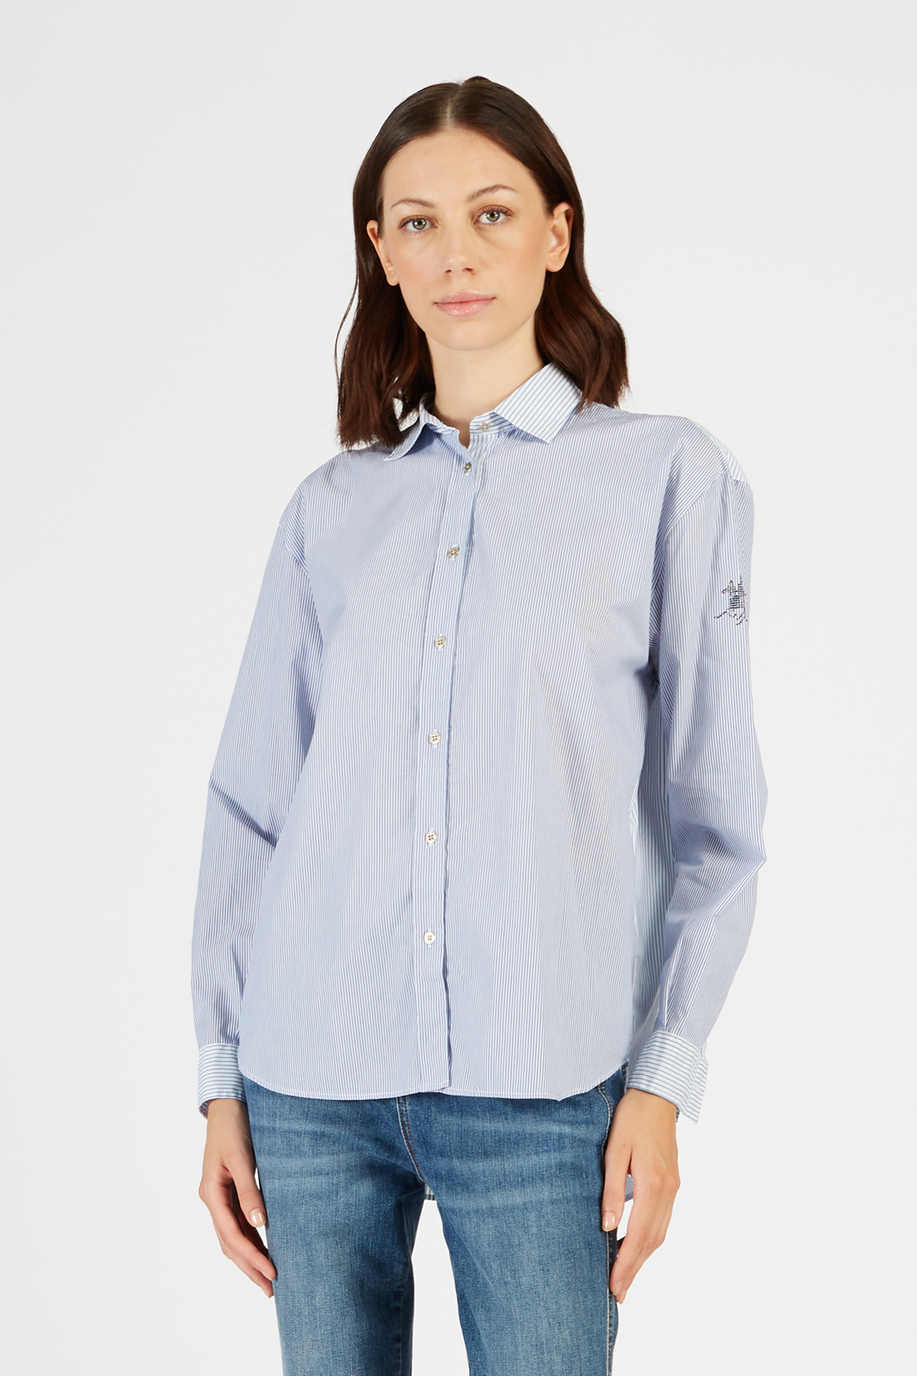 Women’s Timeless Striped Cotton Shirt Long Sleeves Regular fit - Business Looks Women | La Martina - Official Online Shop